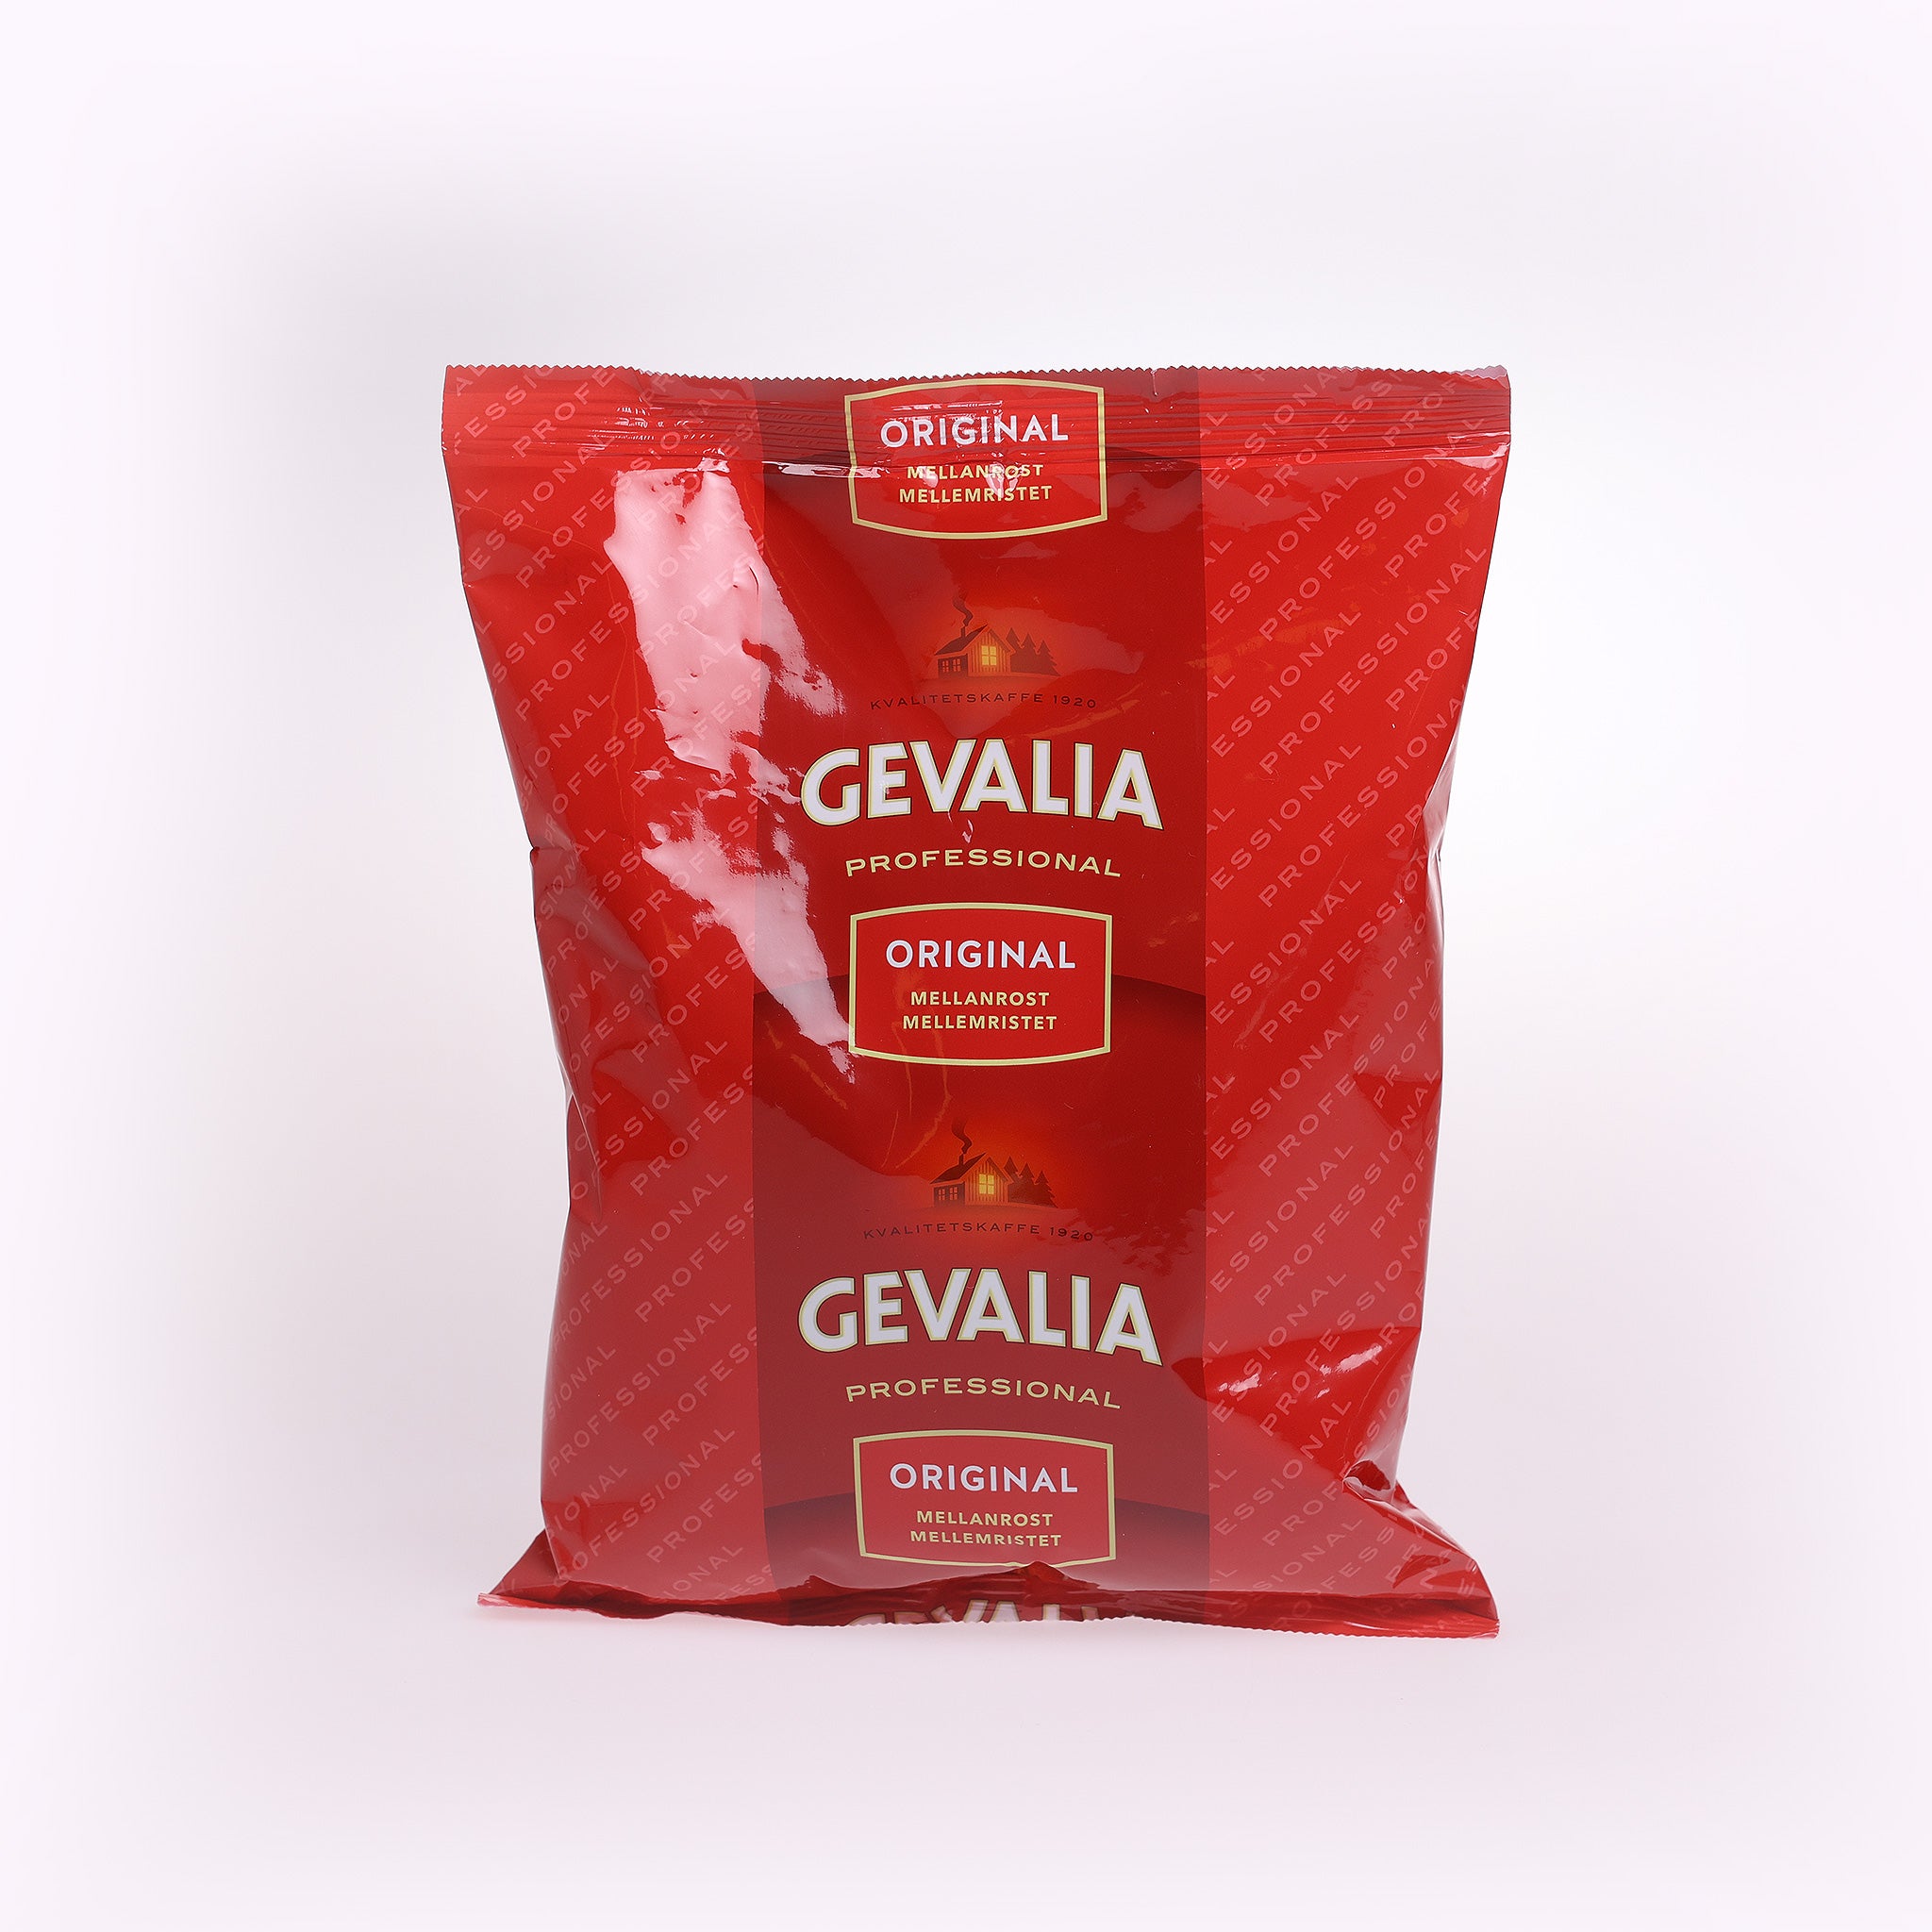 Gevalia Professional kaffe. Kaffen er mellemristet og har en fyldig smag. Kaffebønnerne er 100% arabica og formalede bønner.